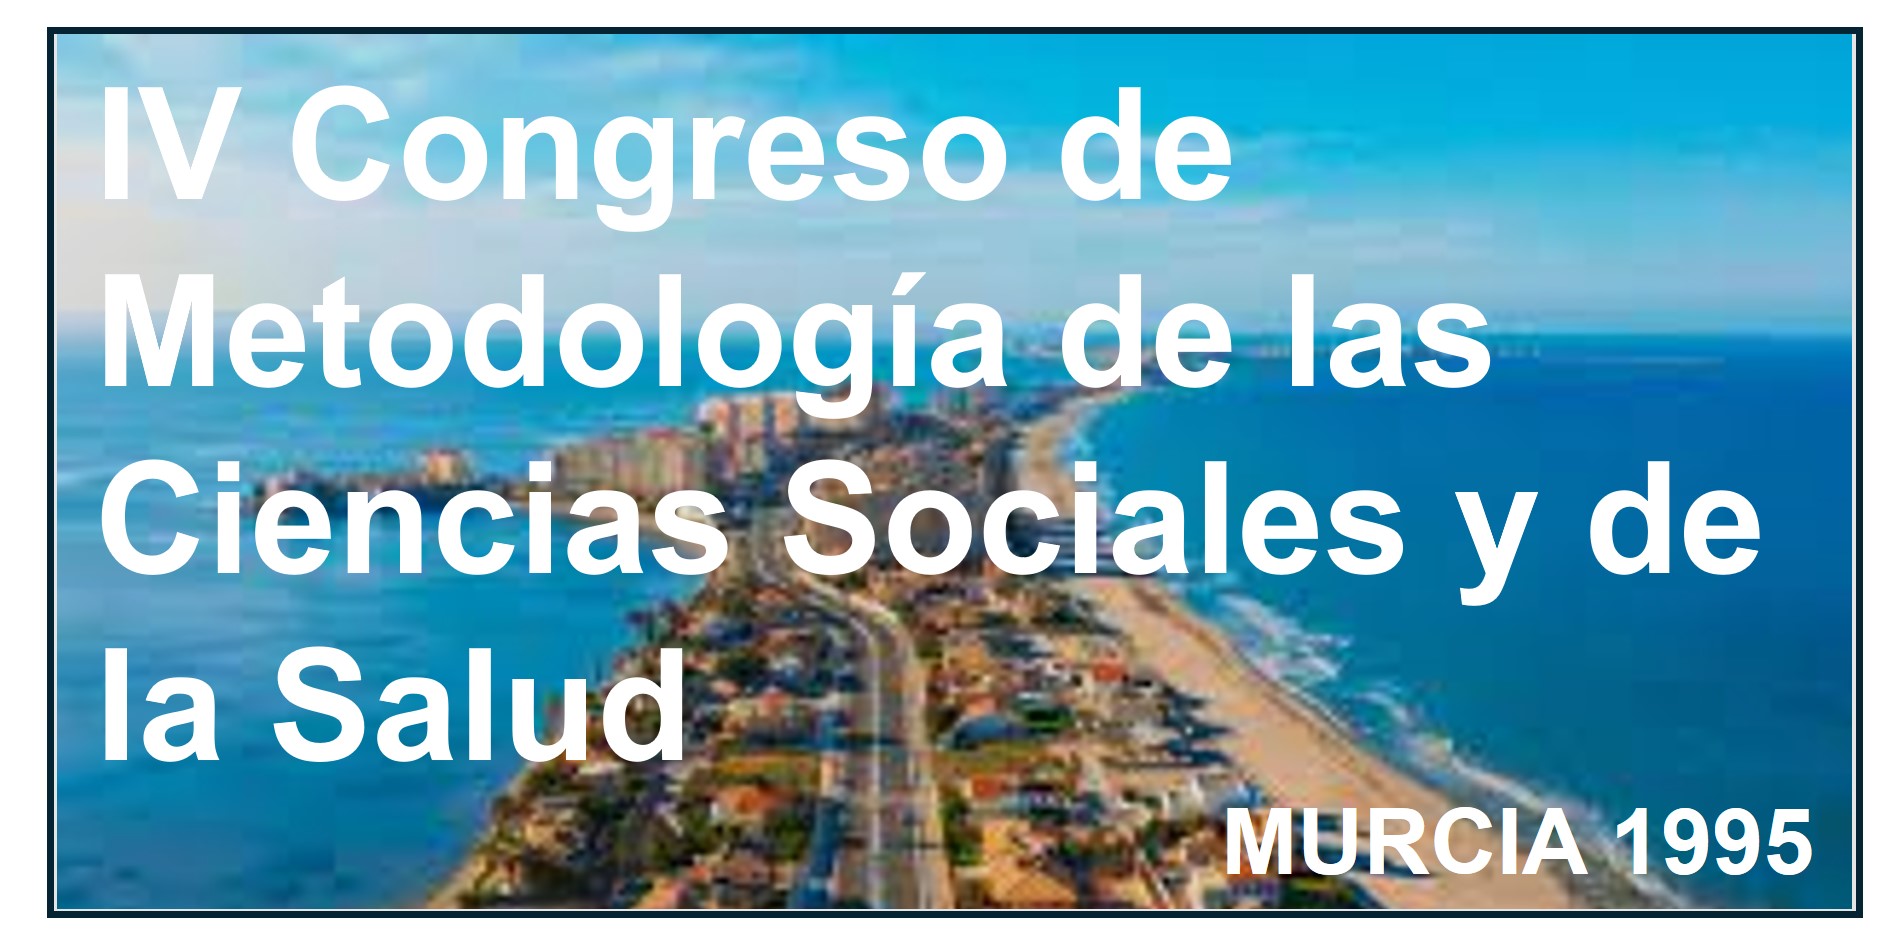    IV Congreso de Metodología de las Ciencias Sociales y de la Salud